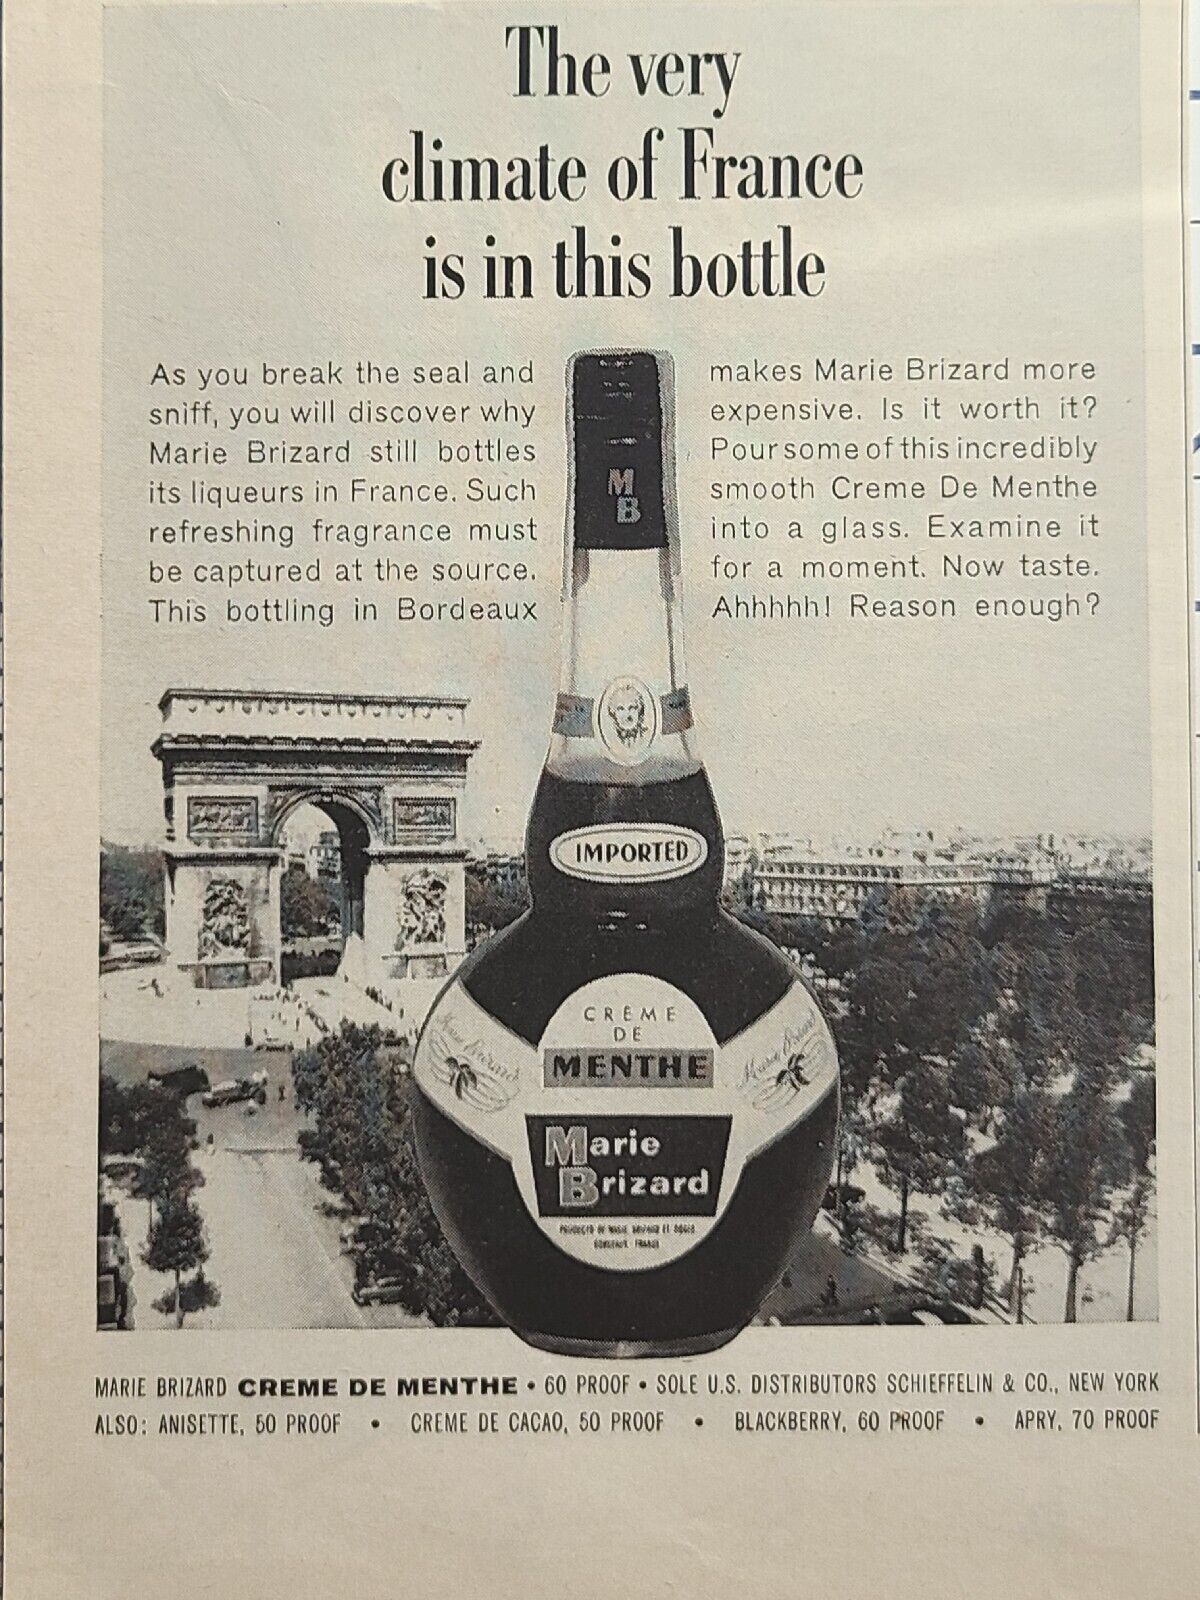 Marie Brizars Creme de Menthe Climate of France Bottle Vintage Print Ad 1964